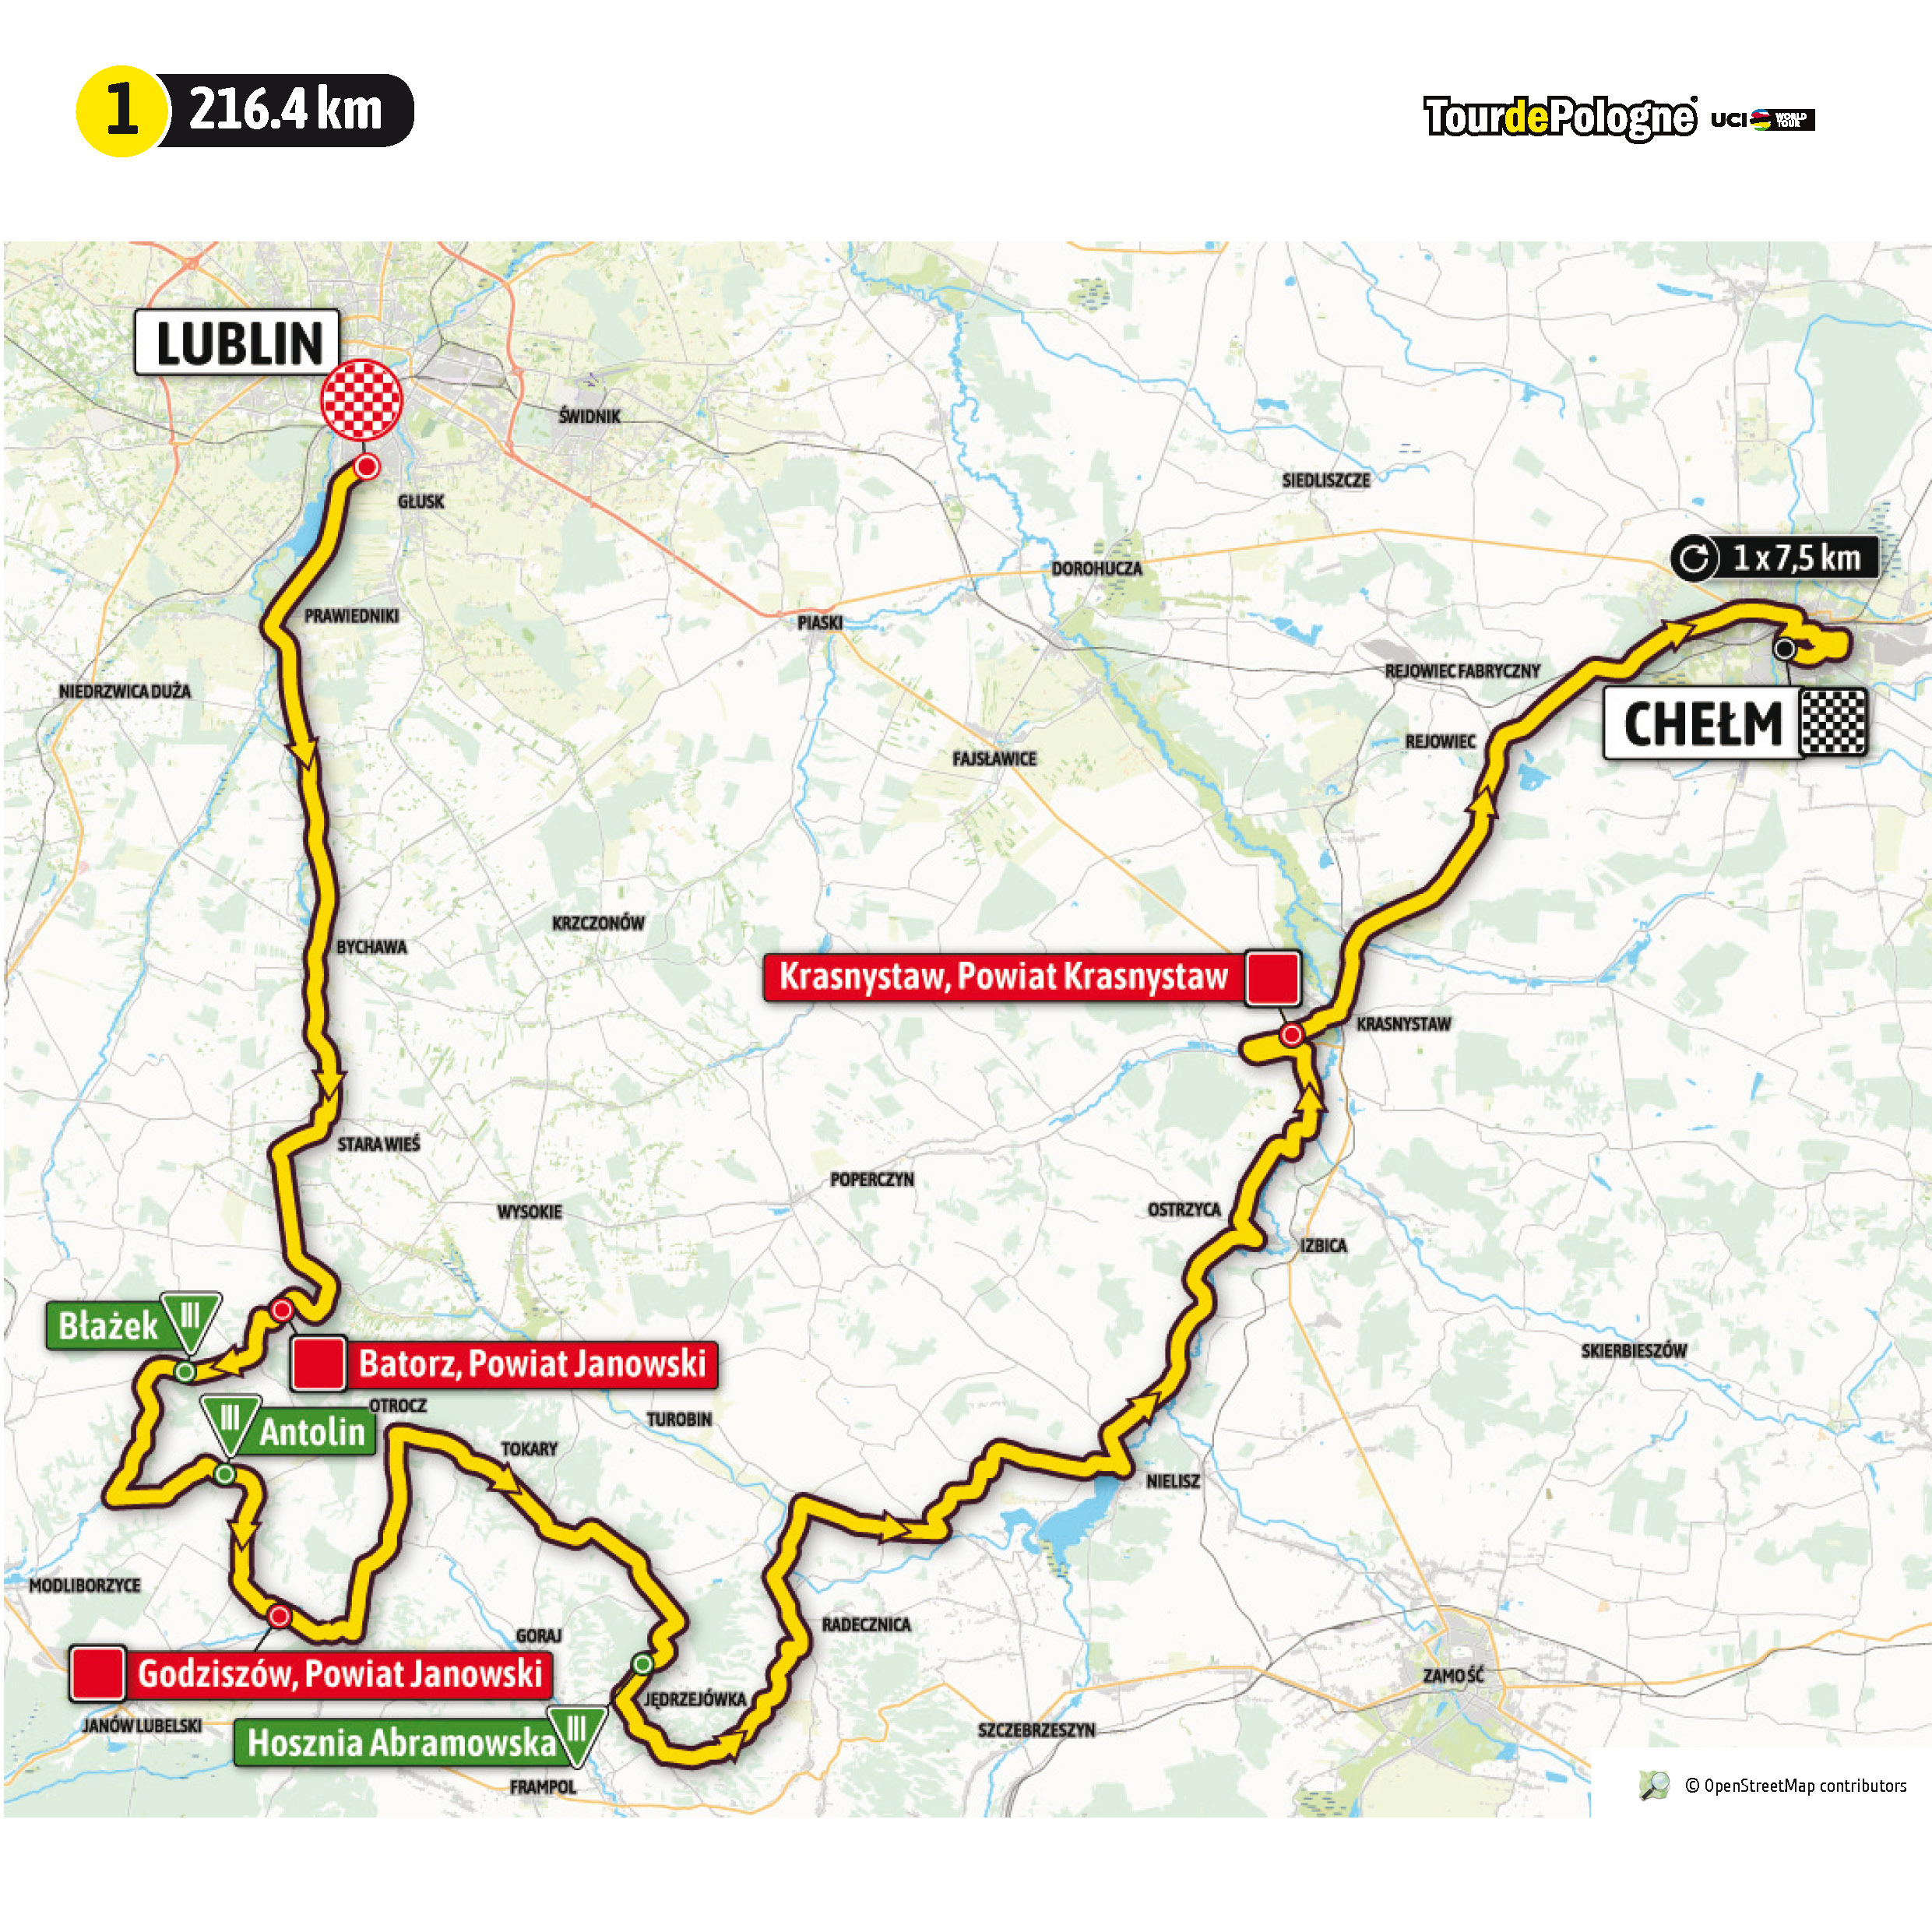 Mapa trasy I etapu tegorocznego Tour de Pologne przebiegającego przez